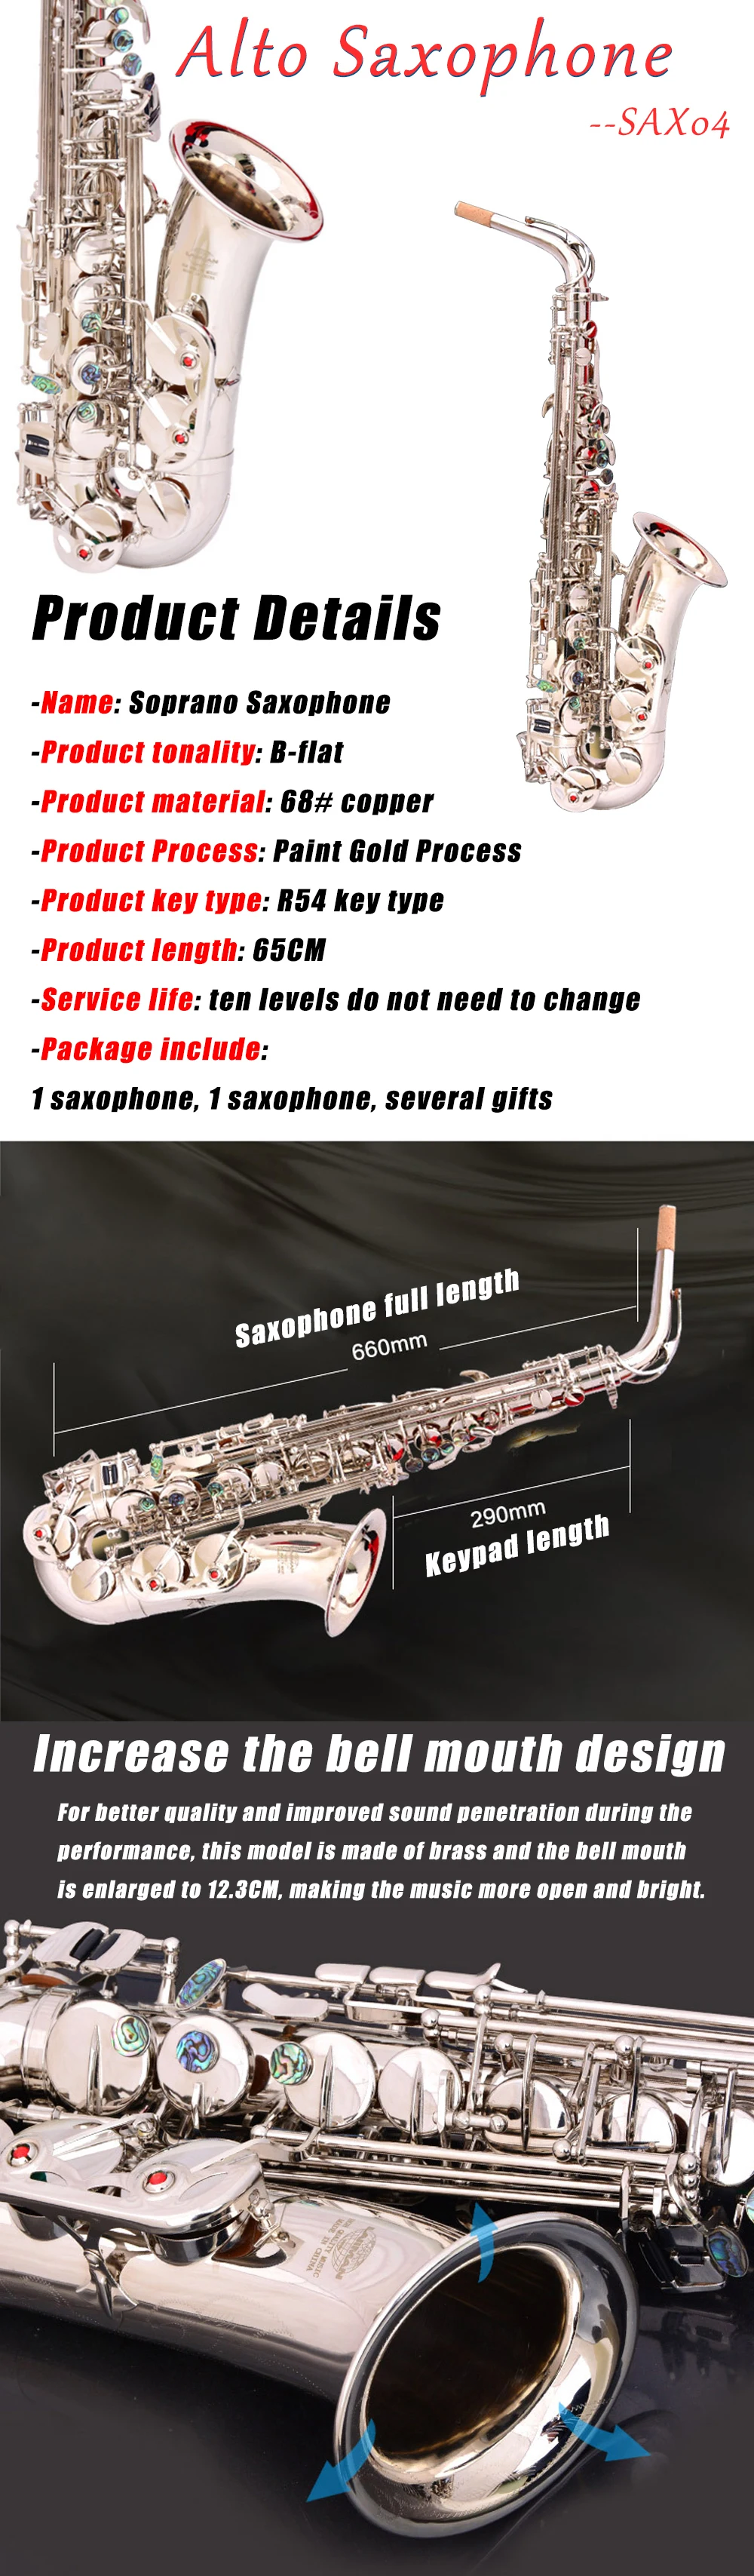 E-плоский альт-саксофон альт саксофон Никель-покрытая серебром Музыкальные инструменты Одежда высшего качества экономически эффективным Saxofon подарок SAX04